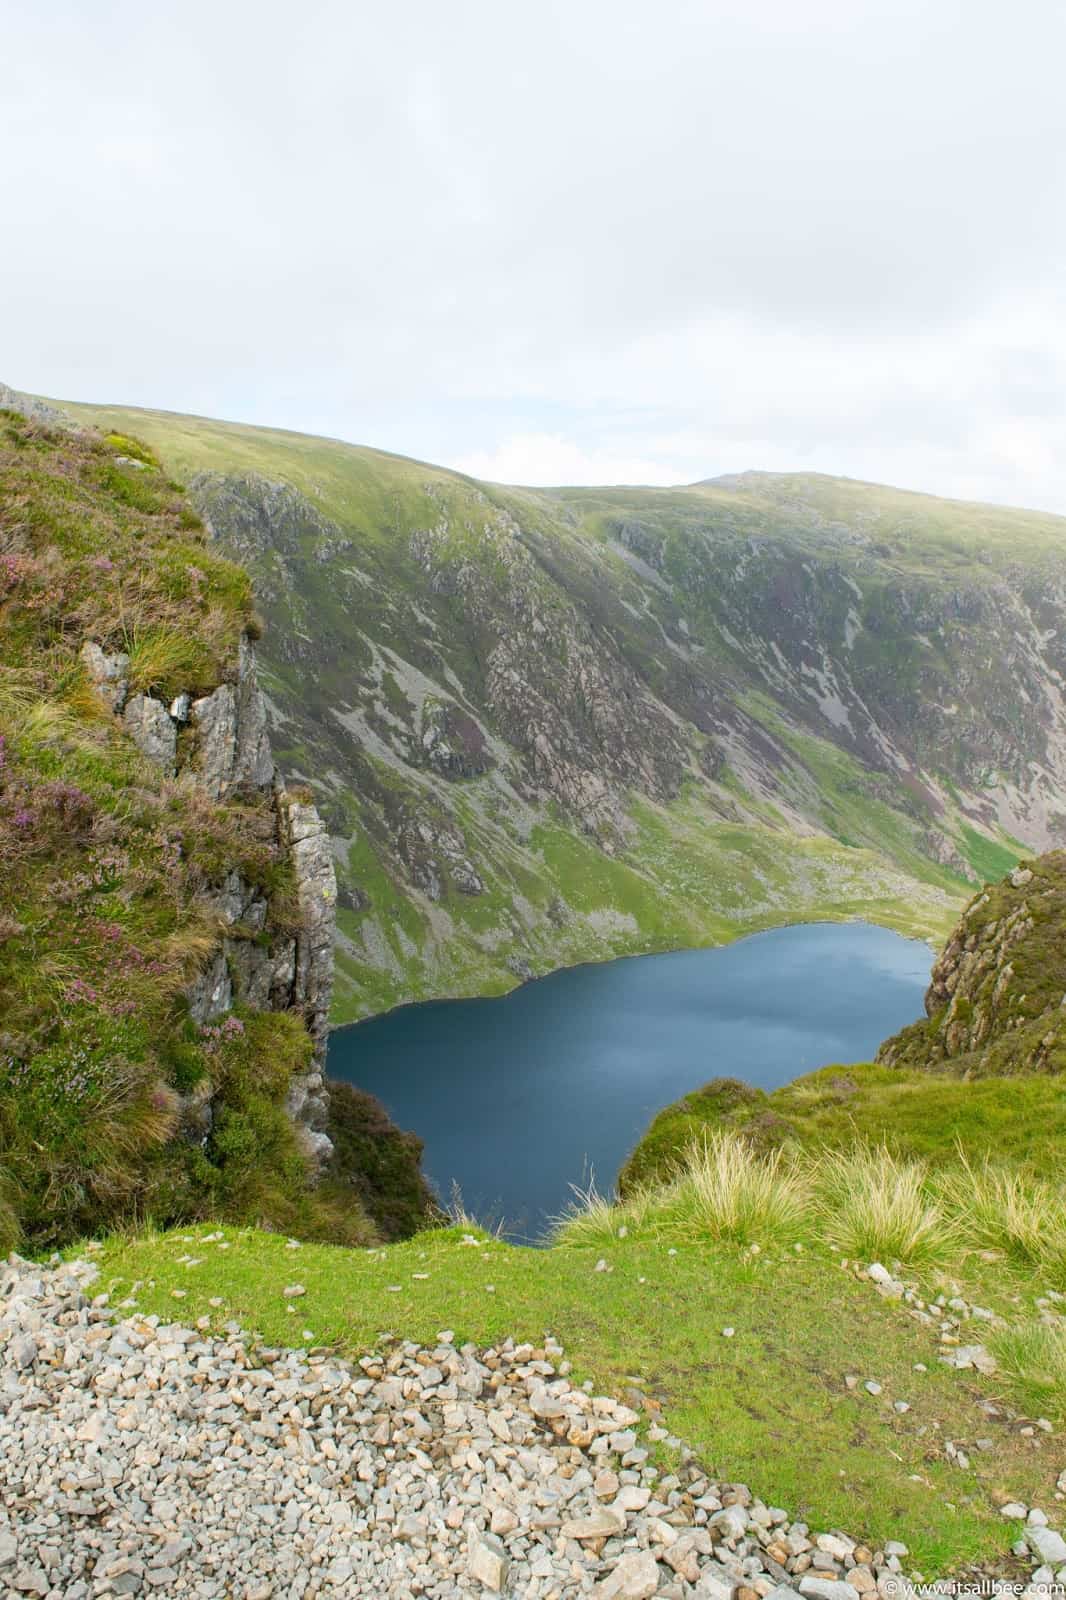 Cadair Idris hiking adventures with views of Snowdonia